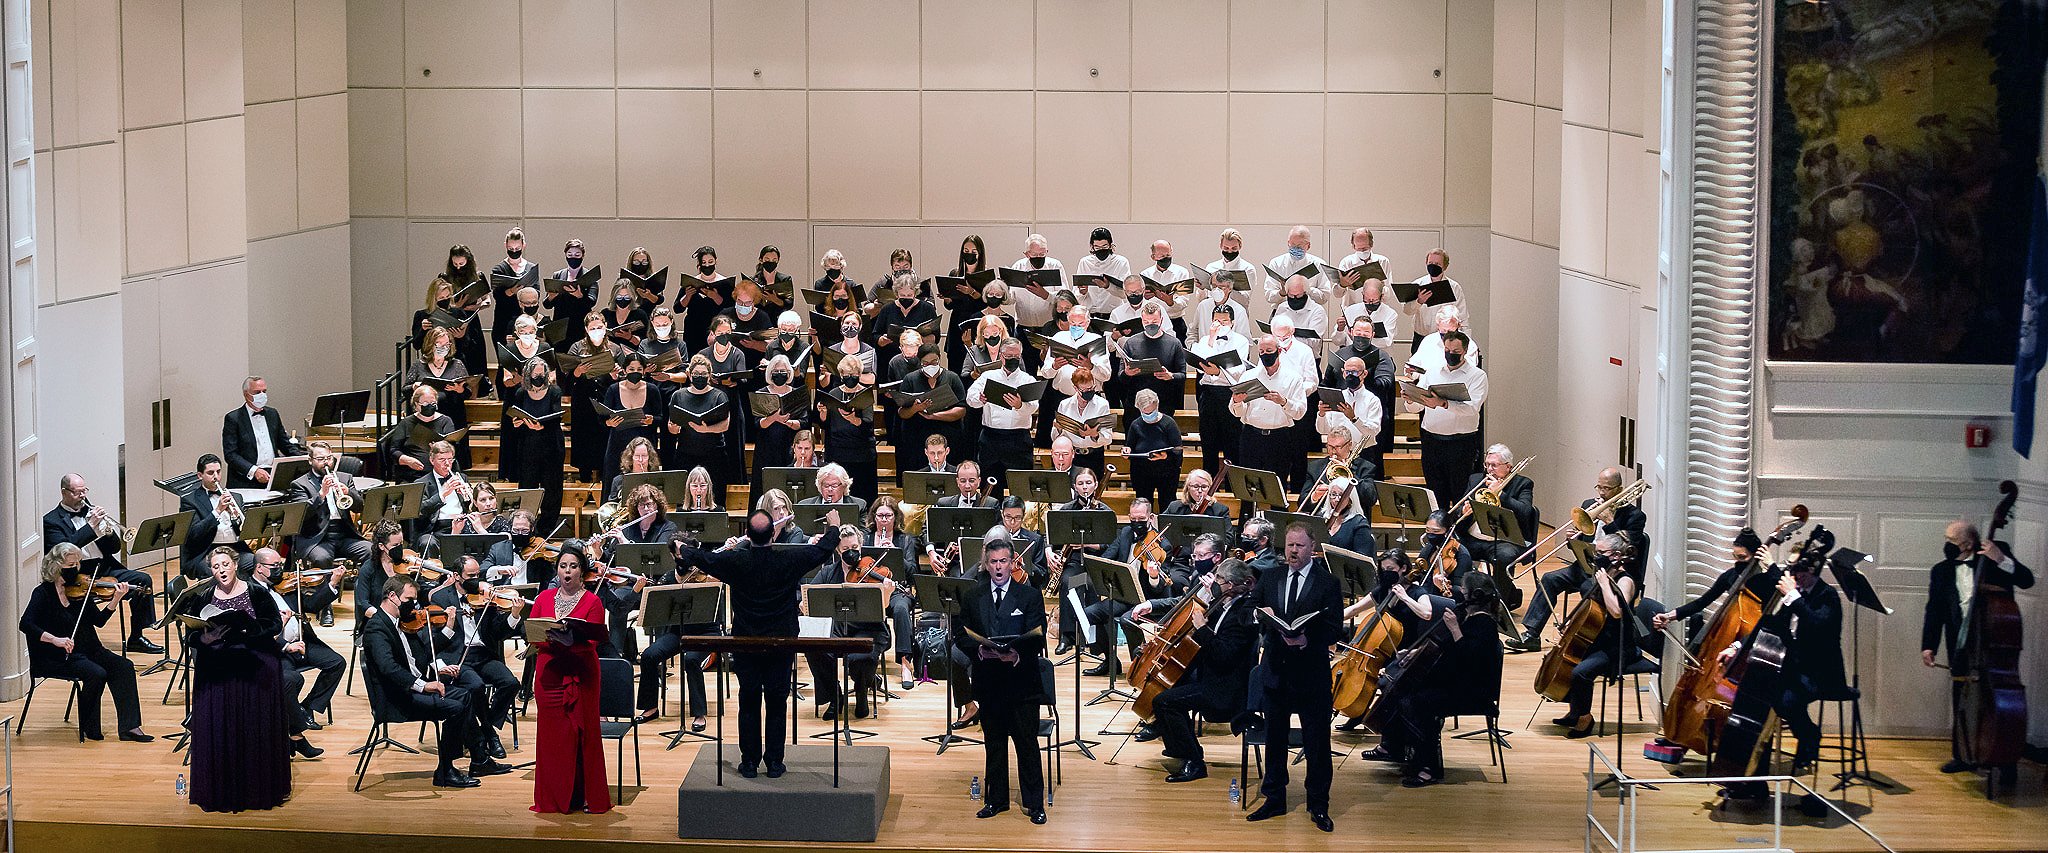 Verdi "Requiem" with Norwalk Symphony Chorus